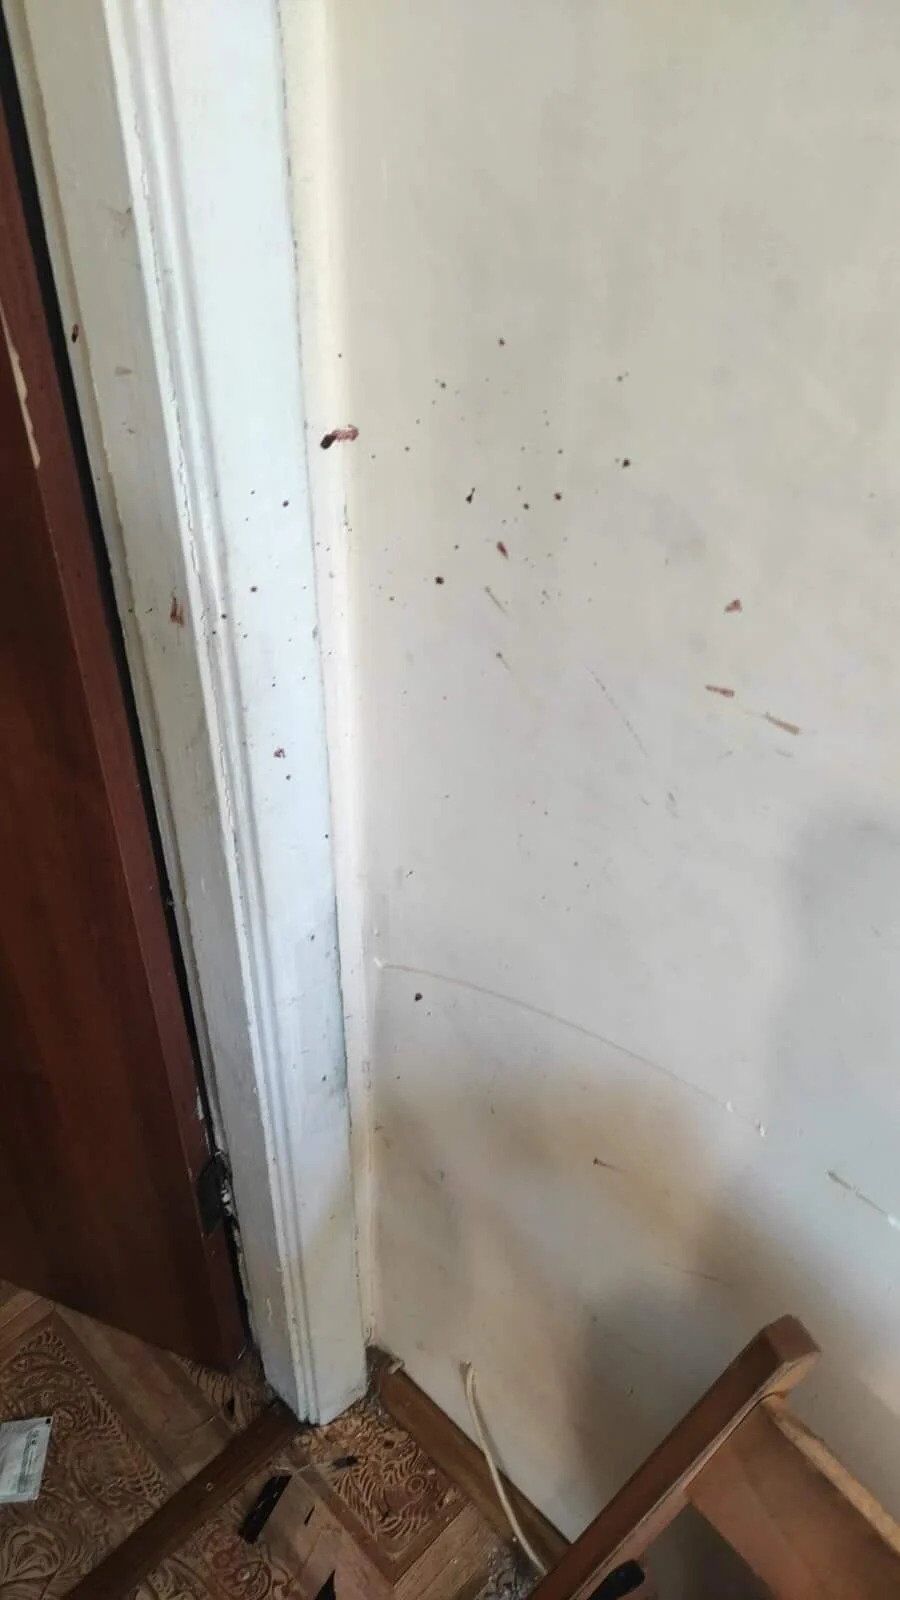 По данным СМИ, стены и пол в квартире Мандича были испачканы кровью